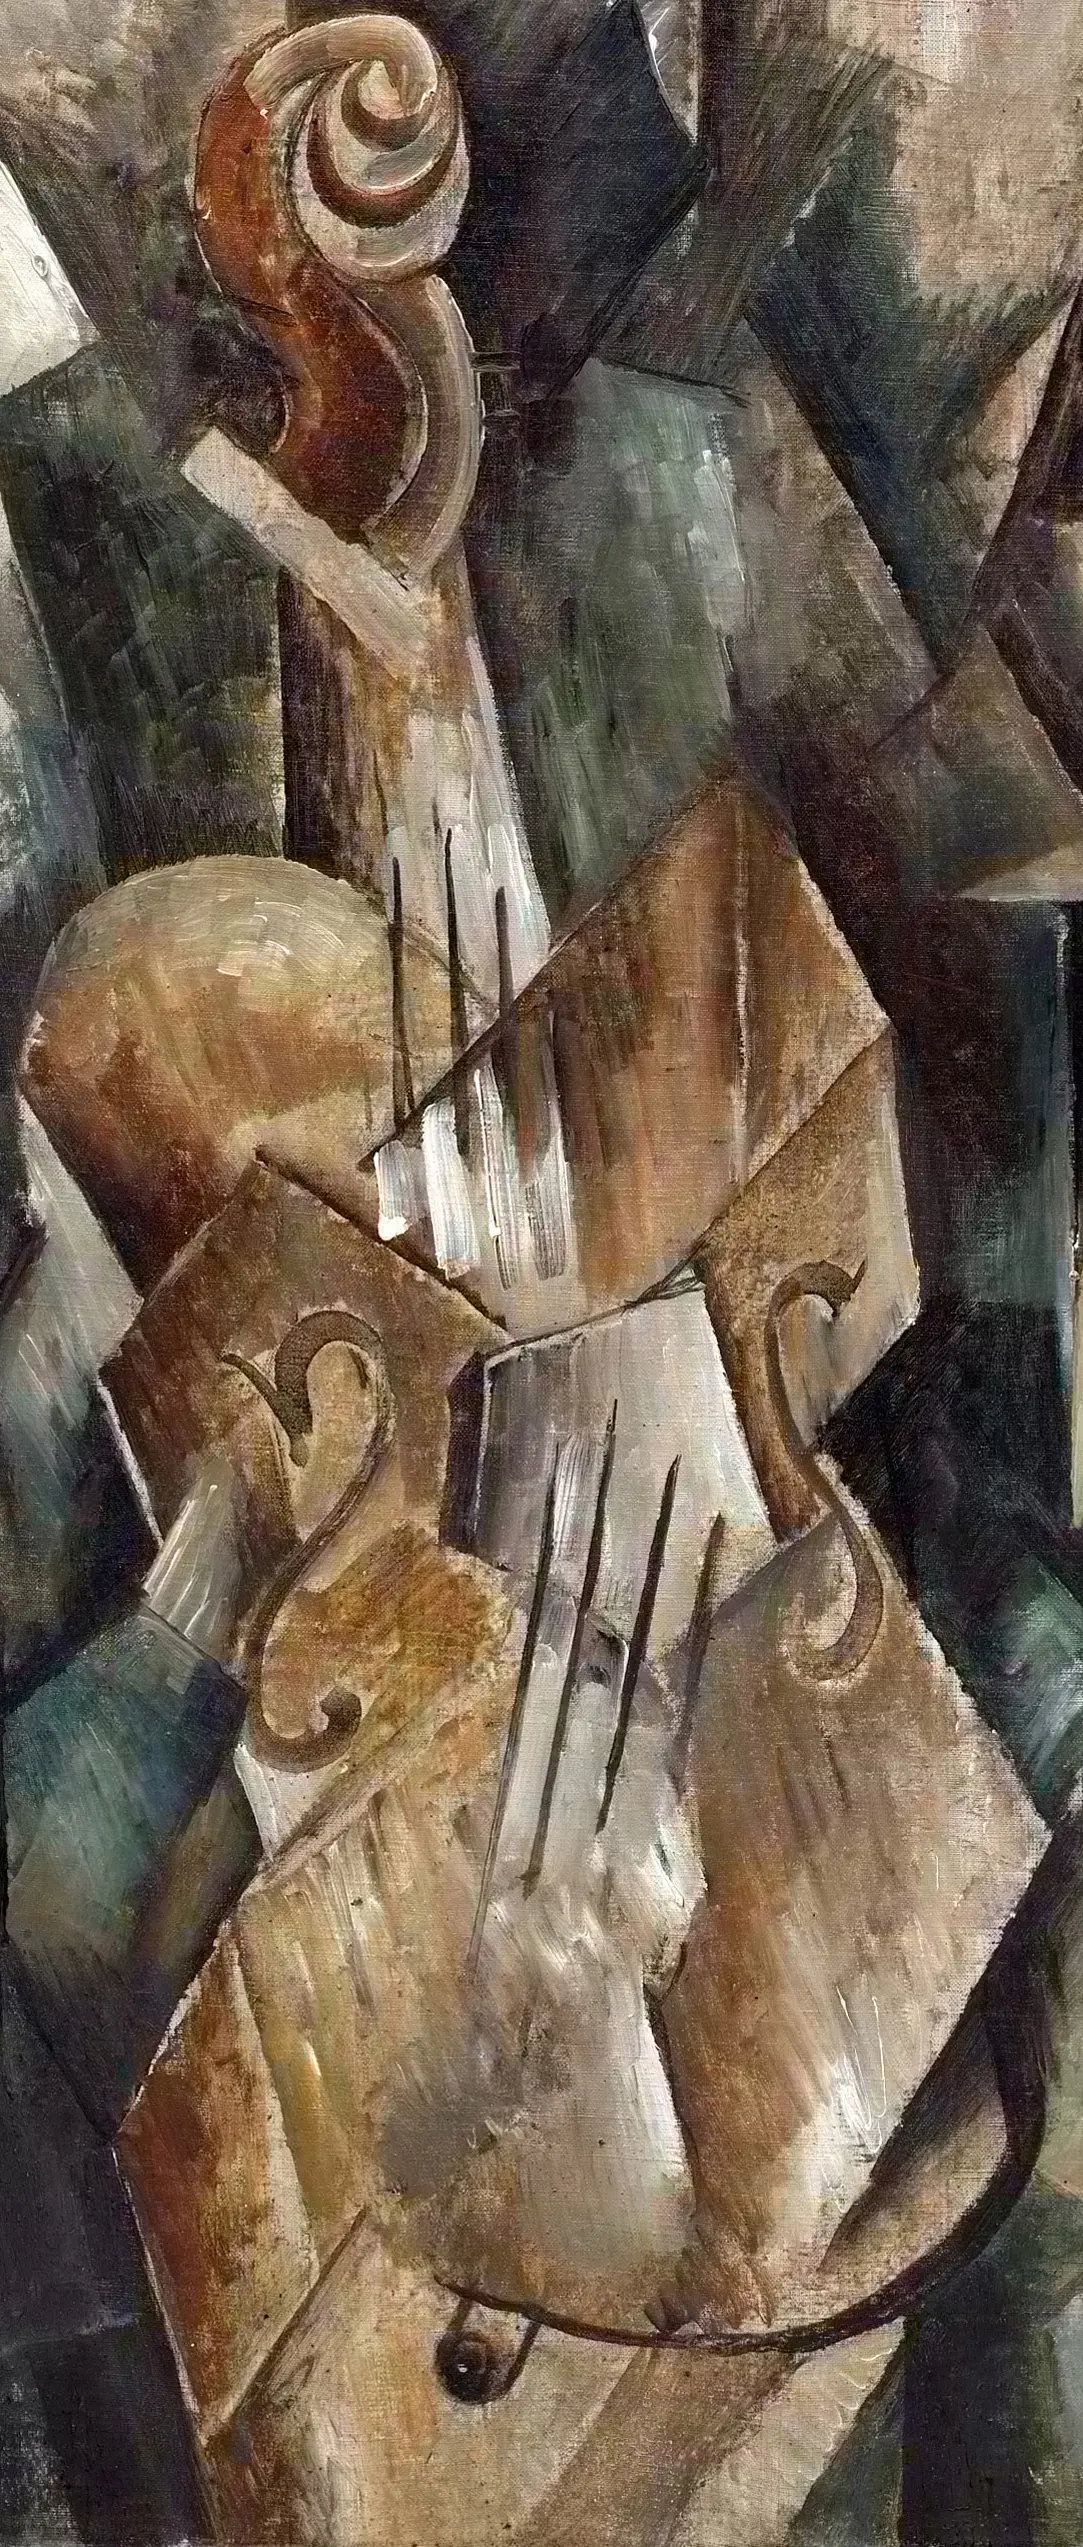 los violines cubismo - Qué obras destacaron en el cubismo